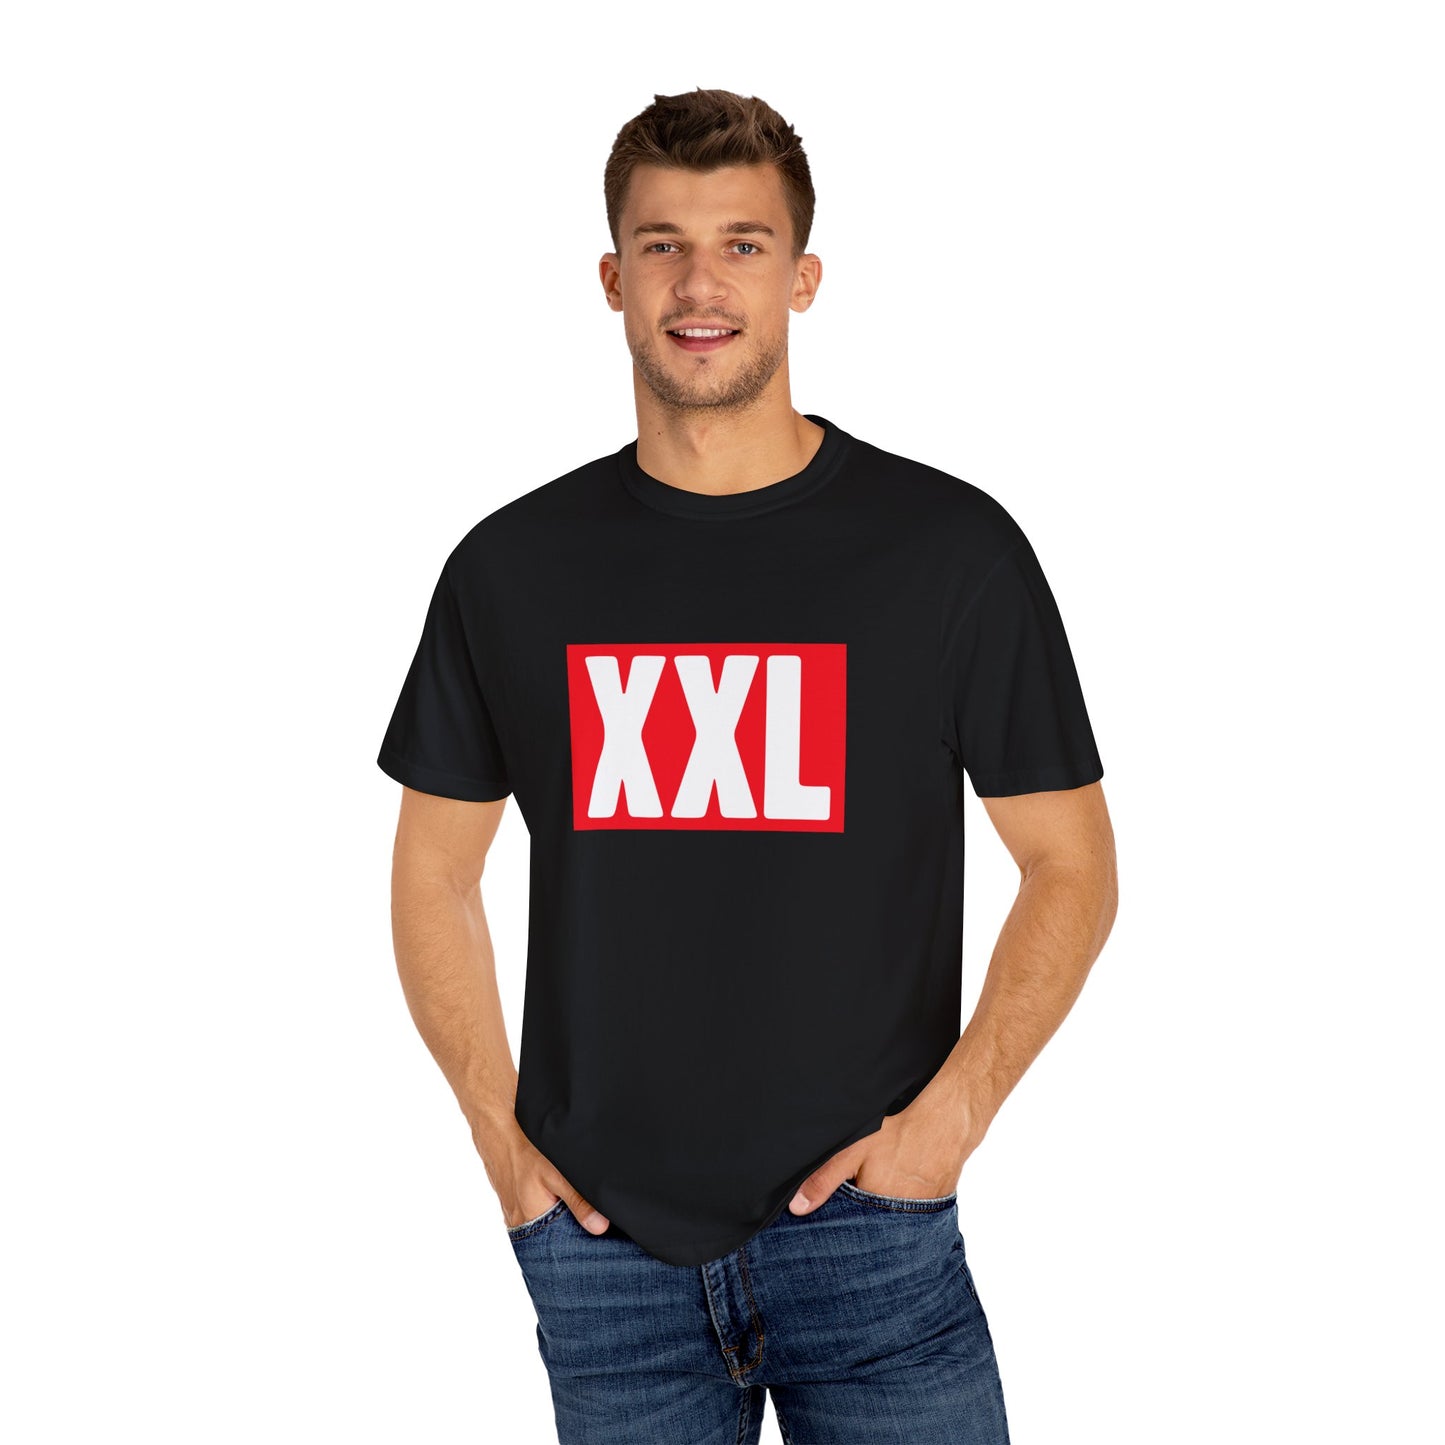 XXL Logo T-shirt